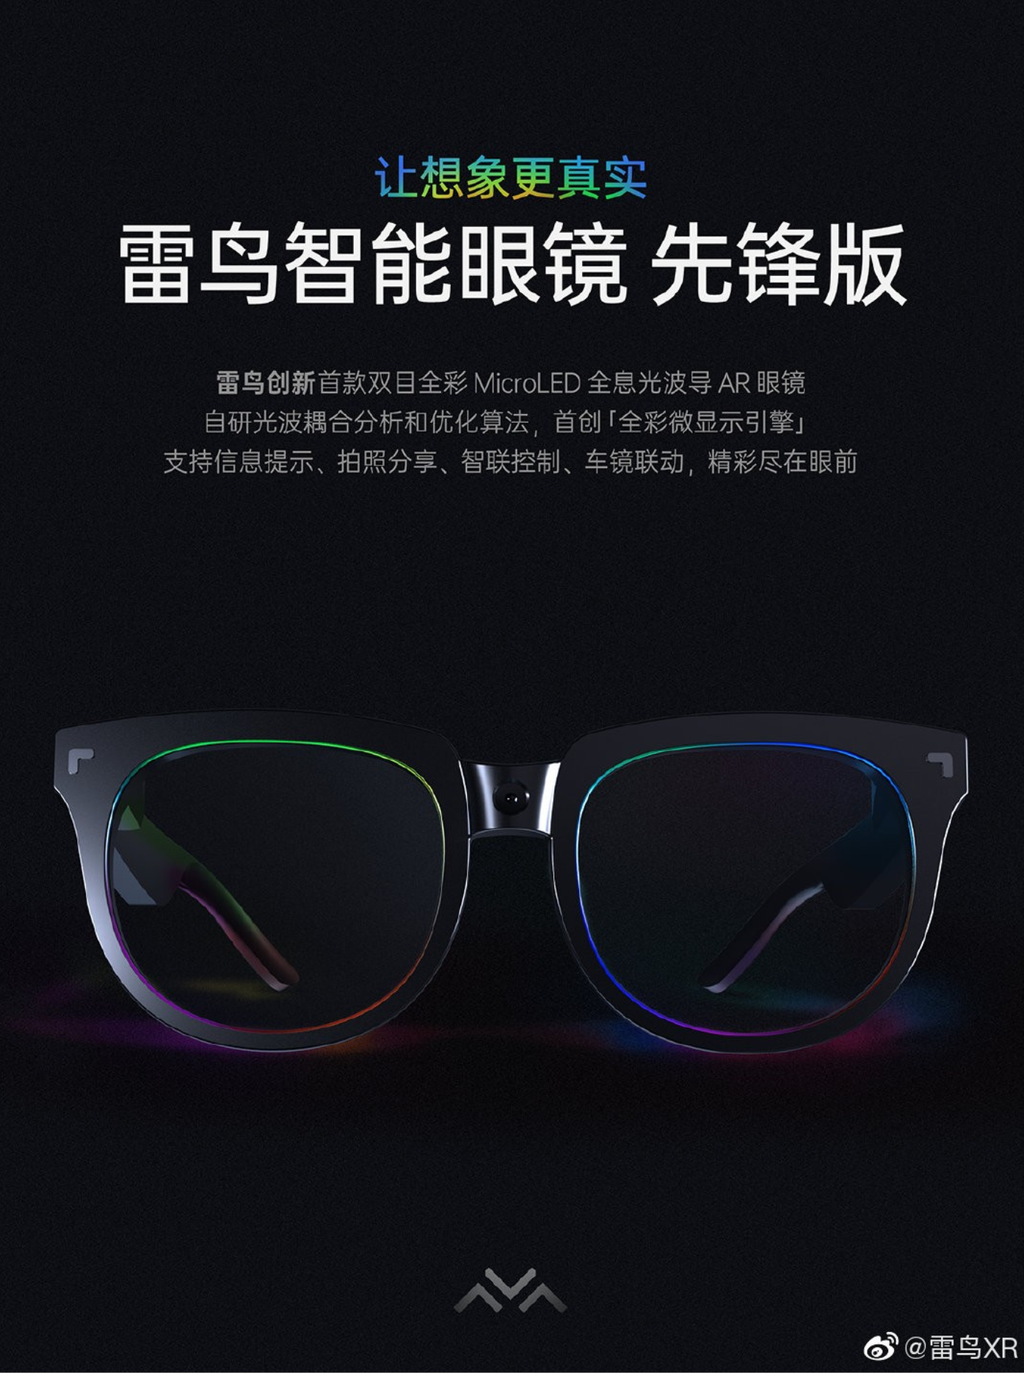 TCL apresenta óculos inteligentes com visual discreto e Micro LEDs nas lentes - 3